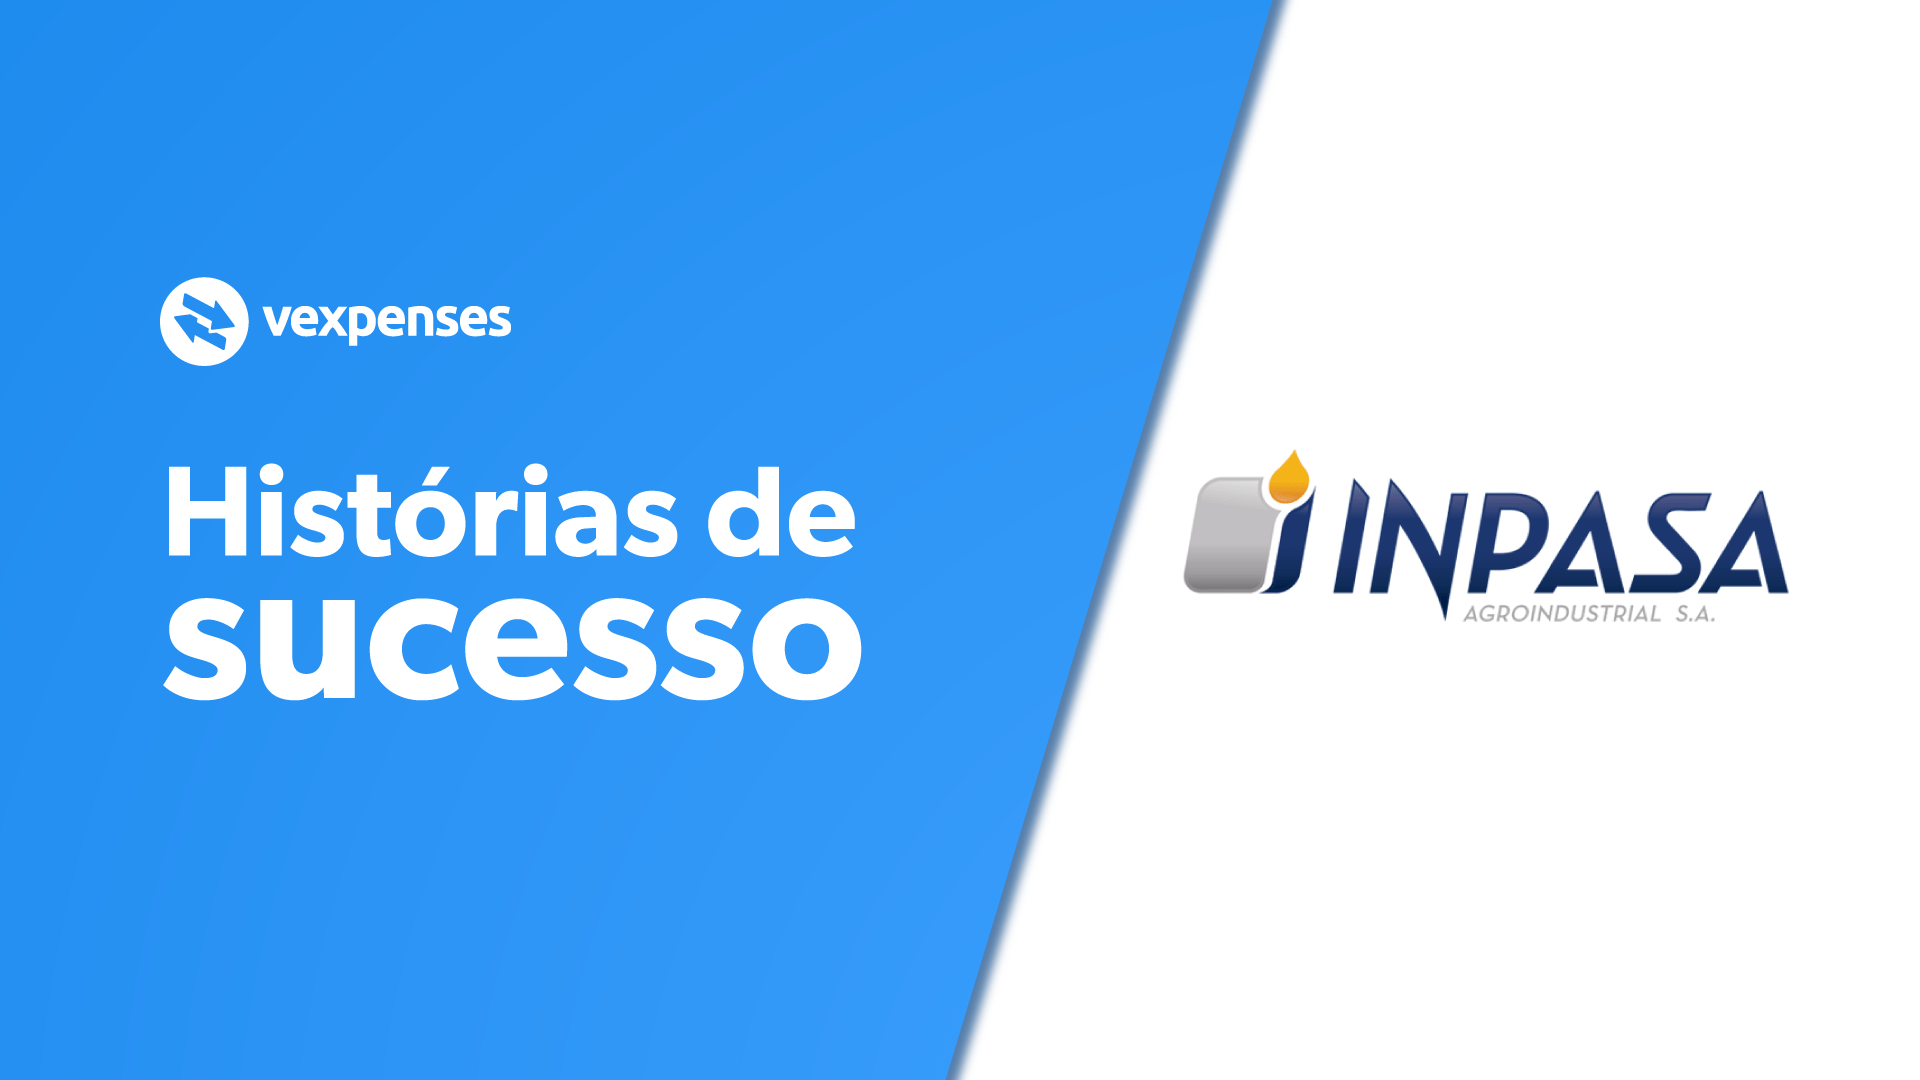 Historia de sucesso Vexpenses - Inpasa